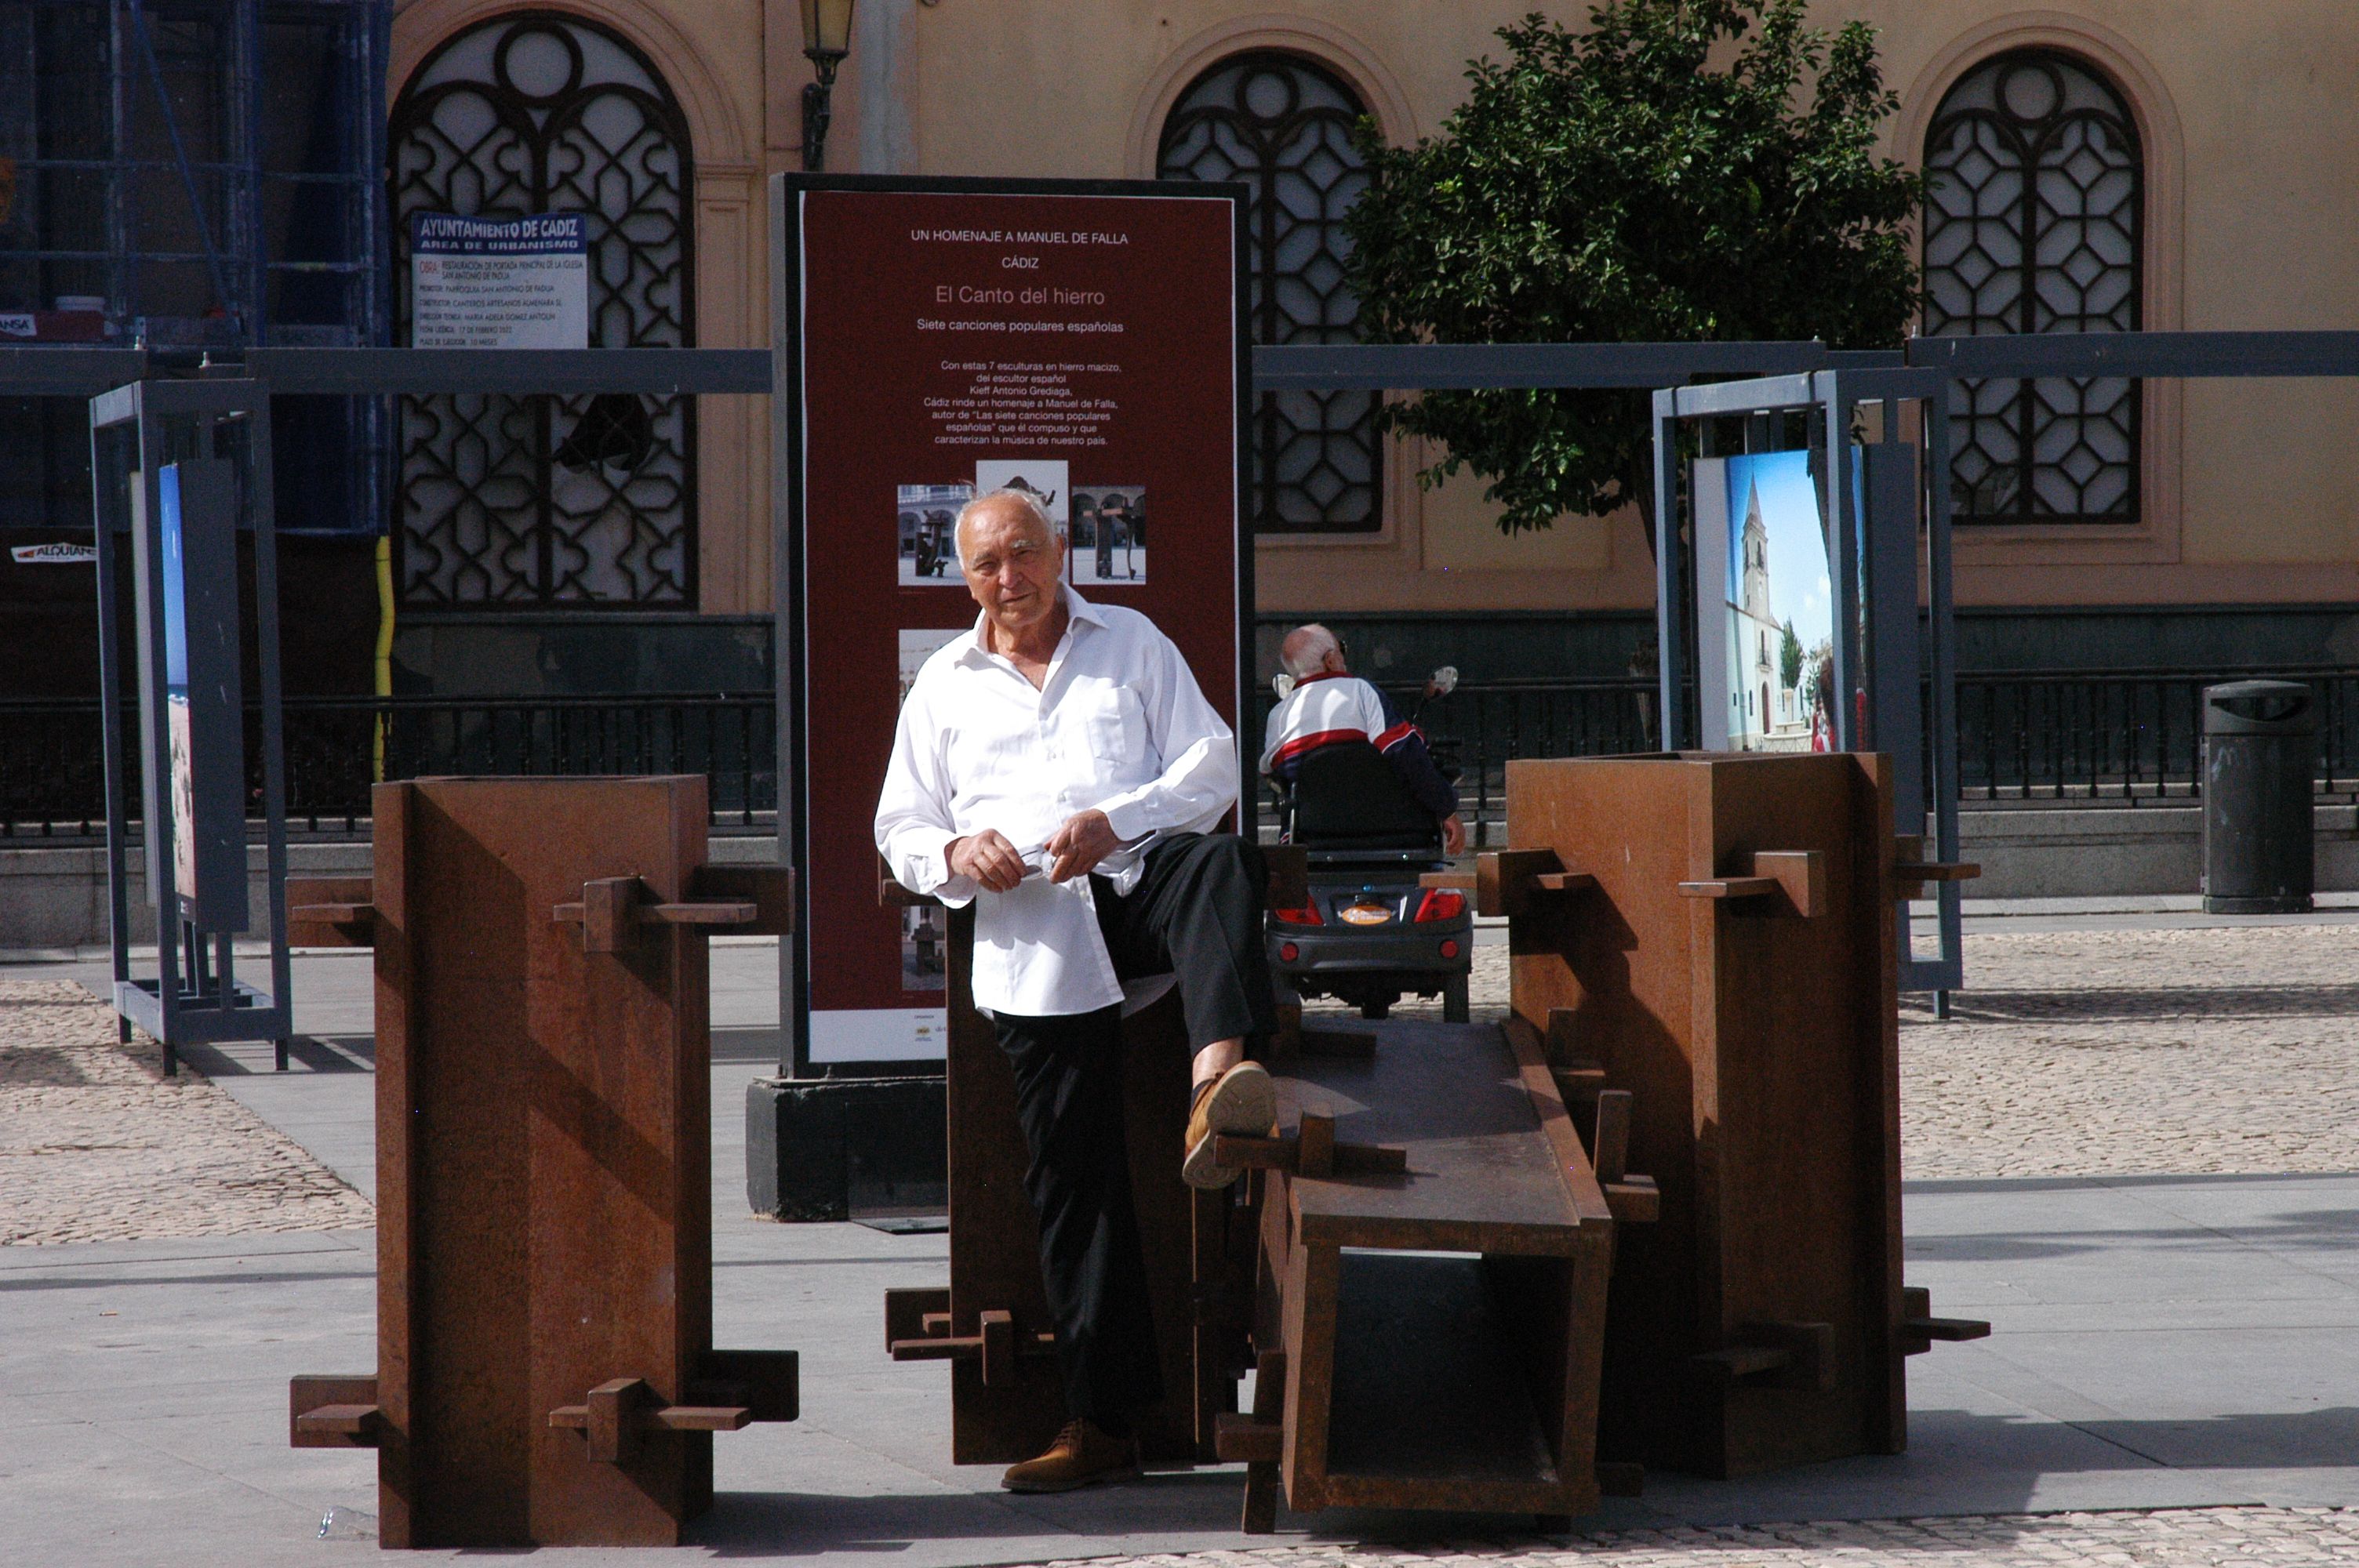 El escultor Kieff Antonio Grediaga expone ‘El canto del hierro. Un homenaje a Manuel de Falla’ en Cádiz